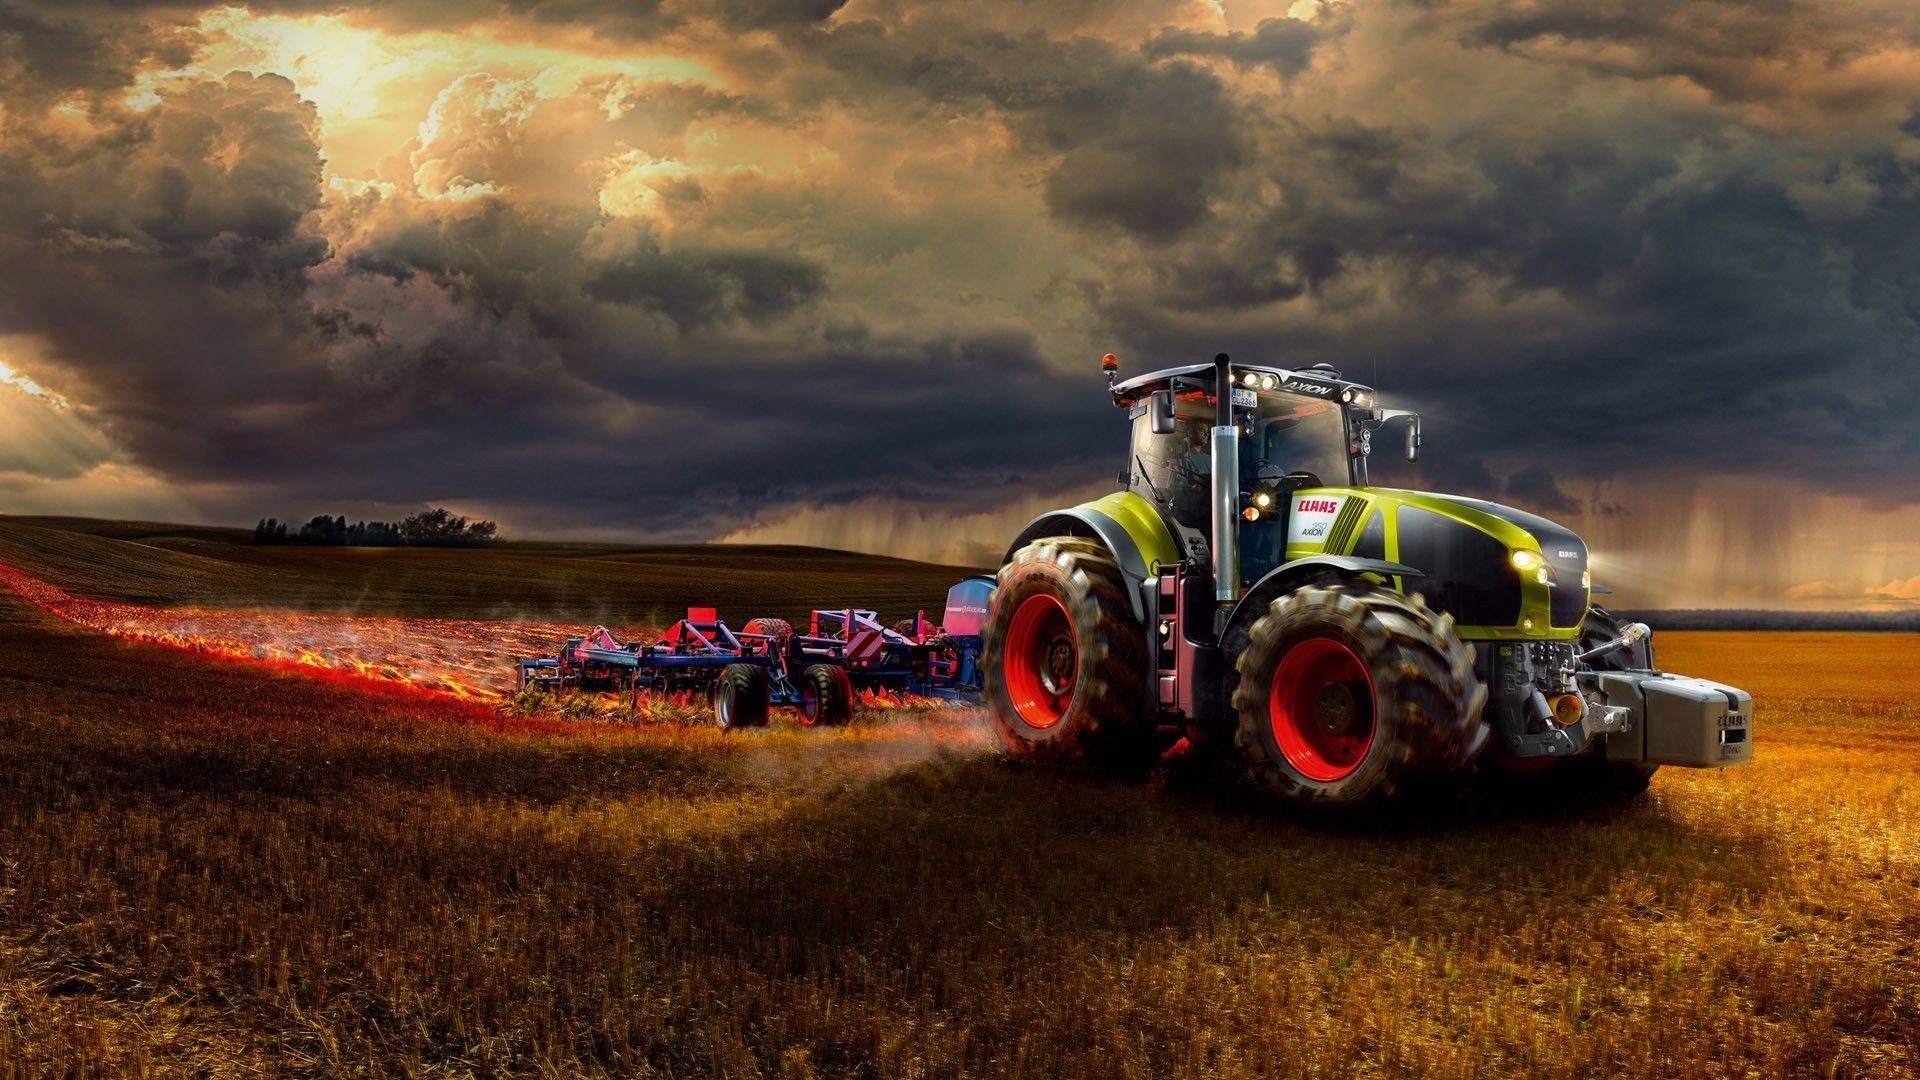 Farm tractor wallpaper. PC